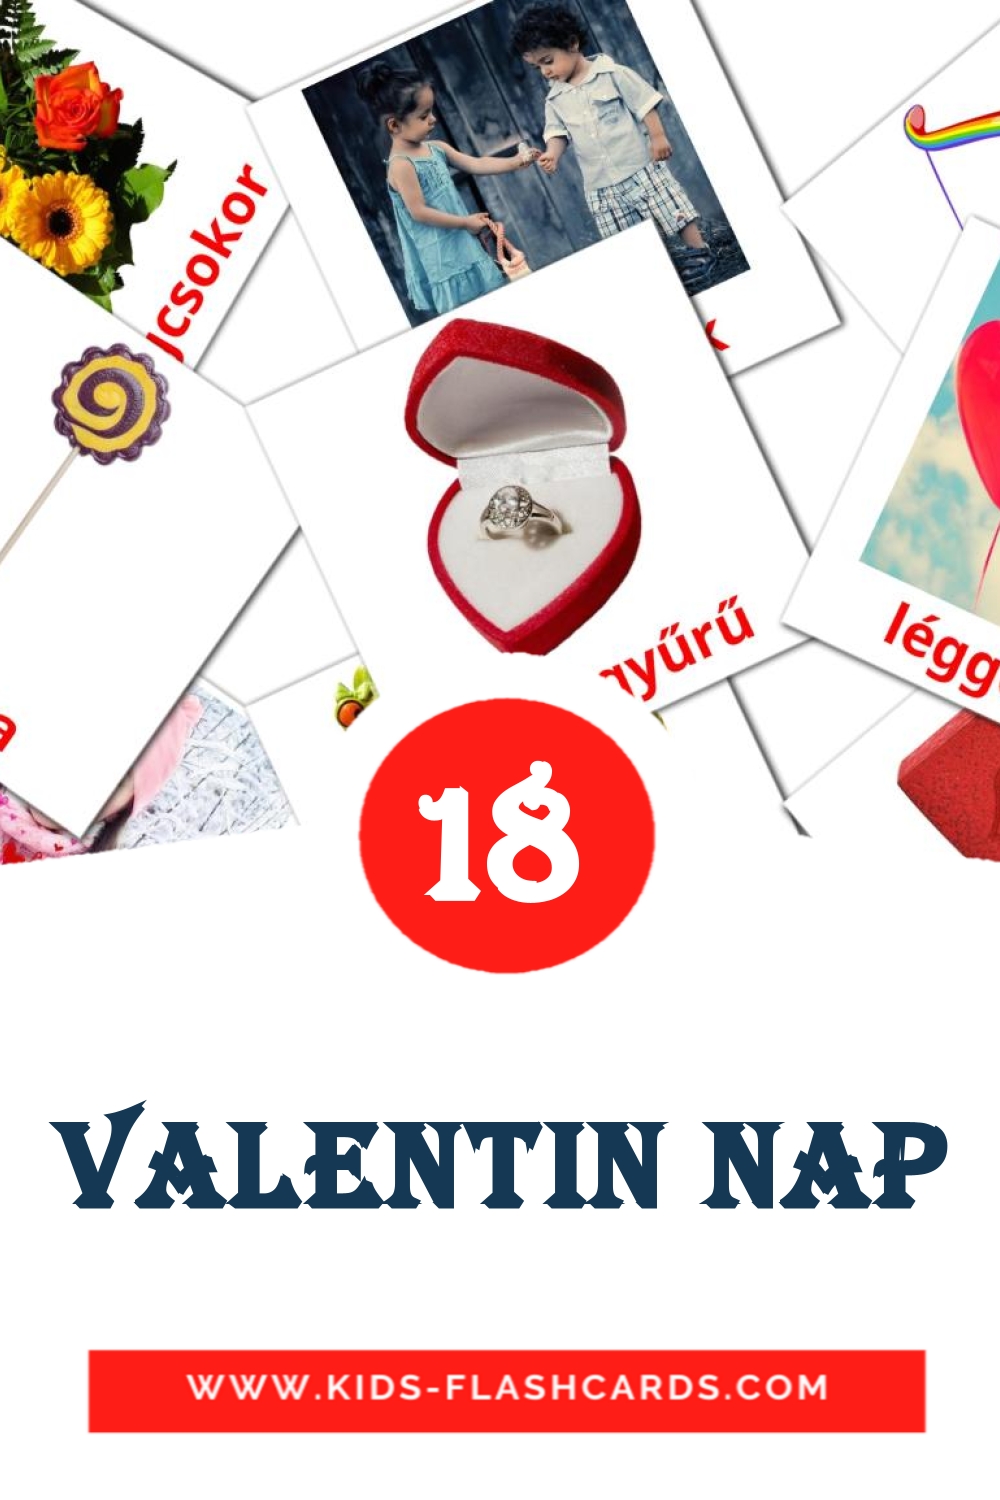 Valentin nap на венгерском для Детского Сада (18 карточек)